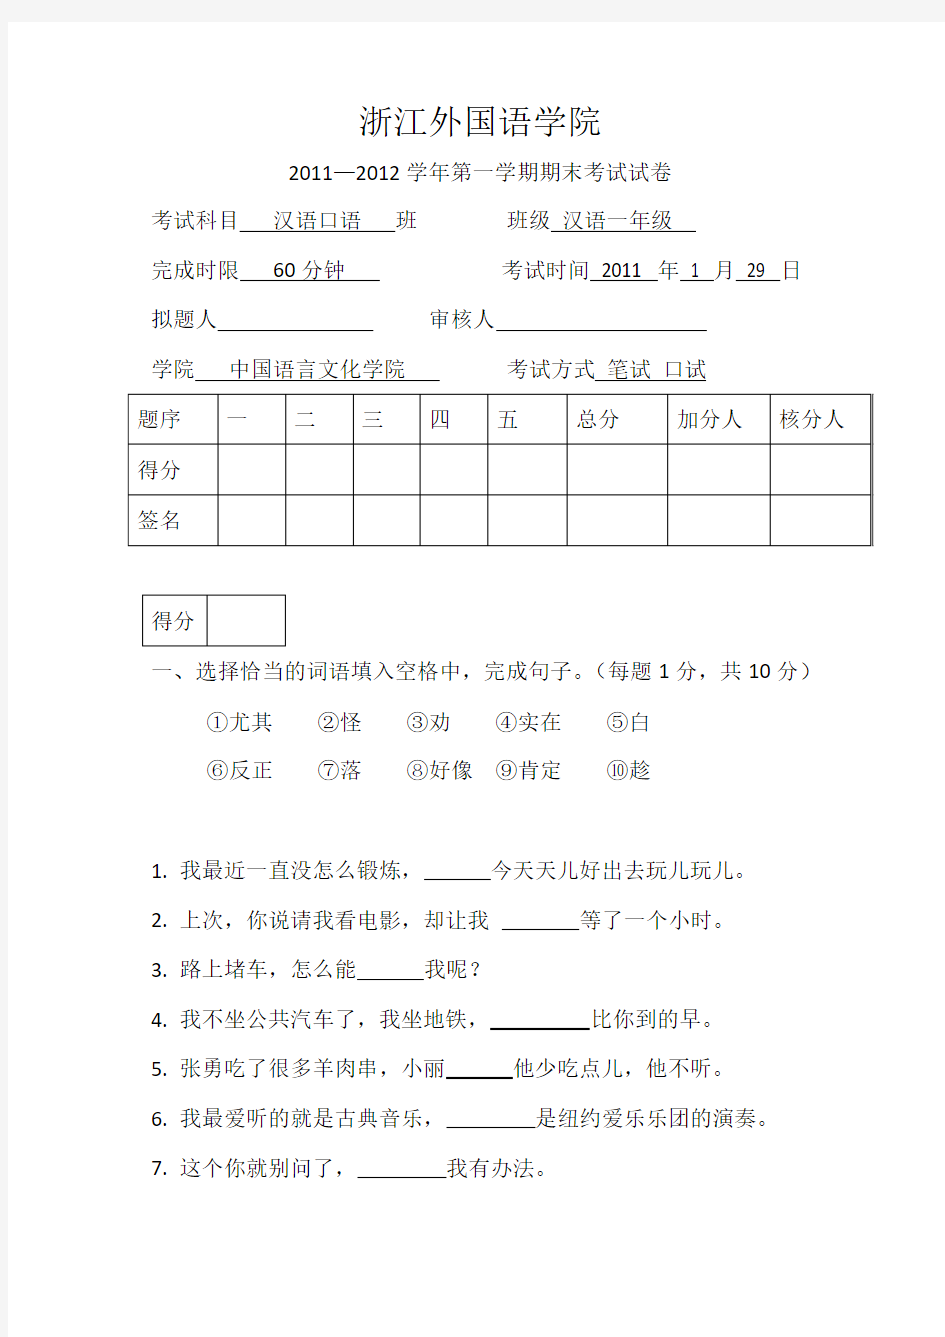 留学生汉语口语考试试卷